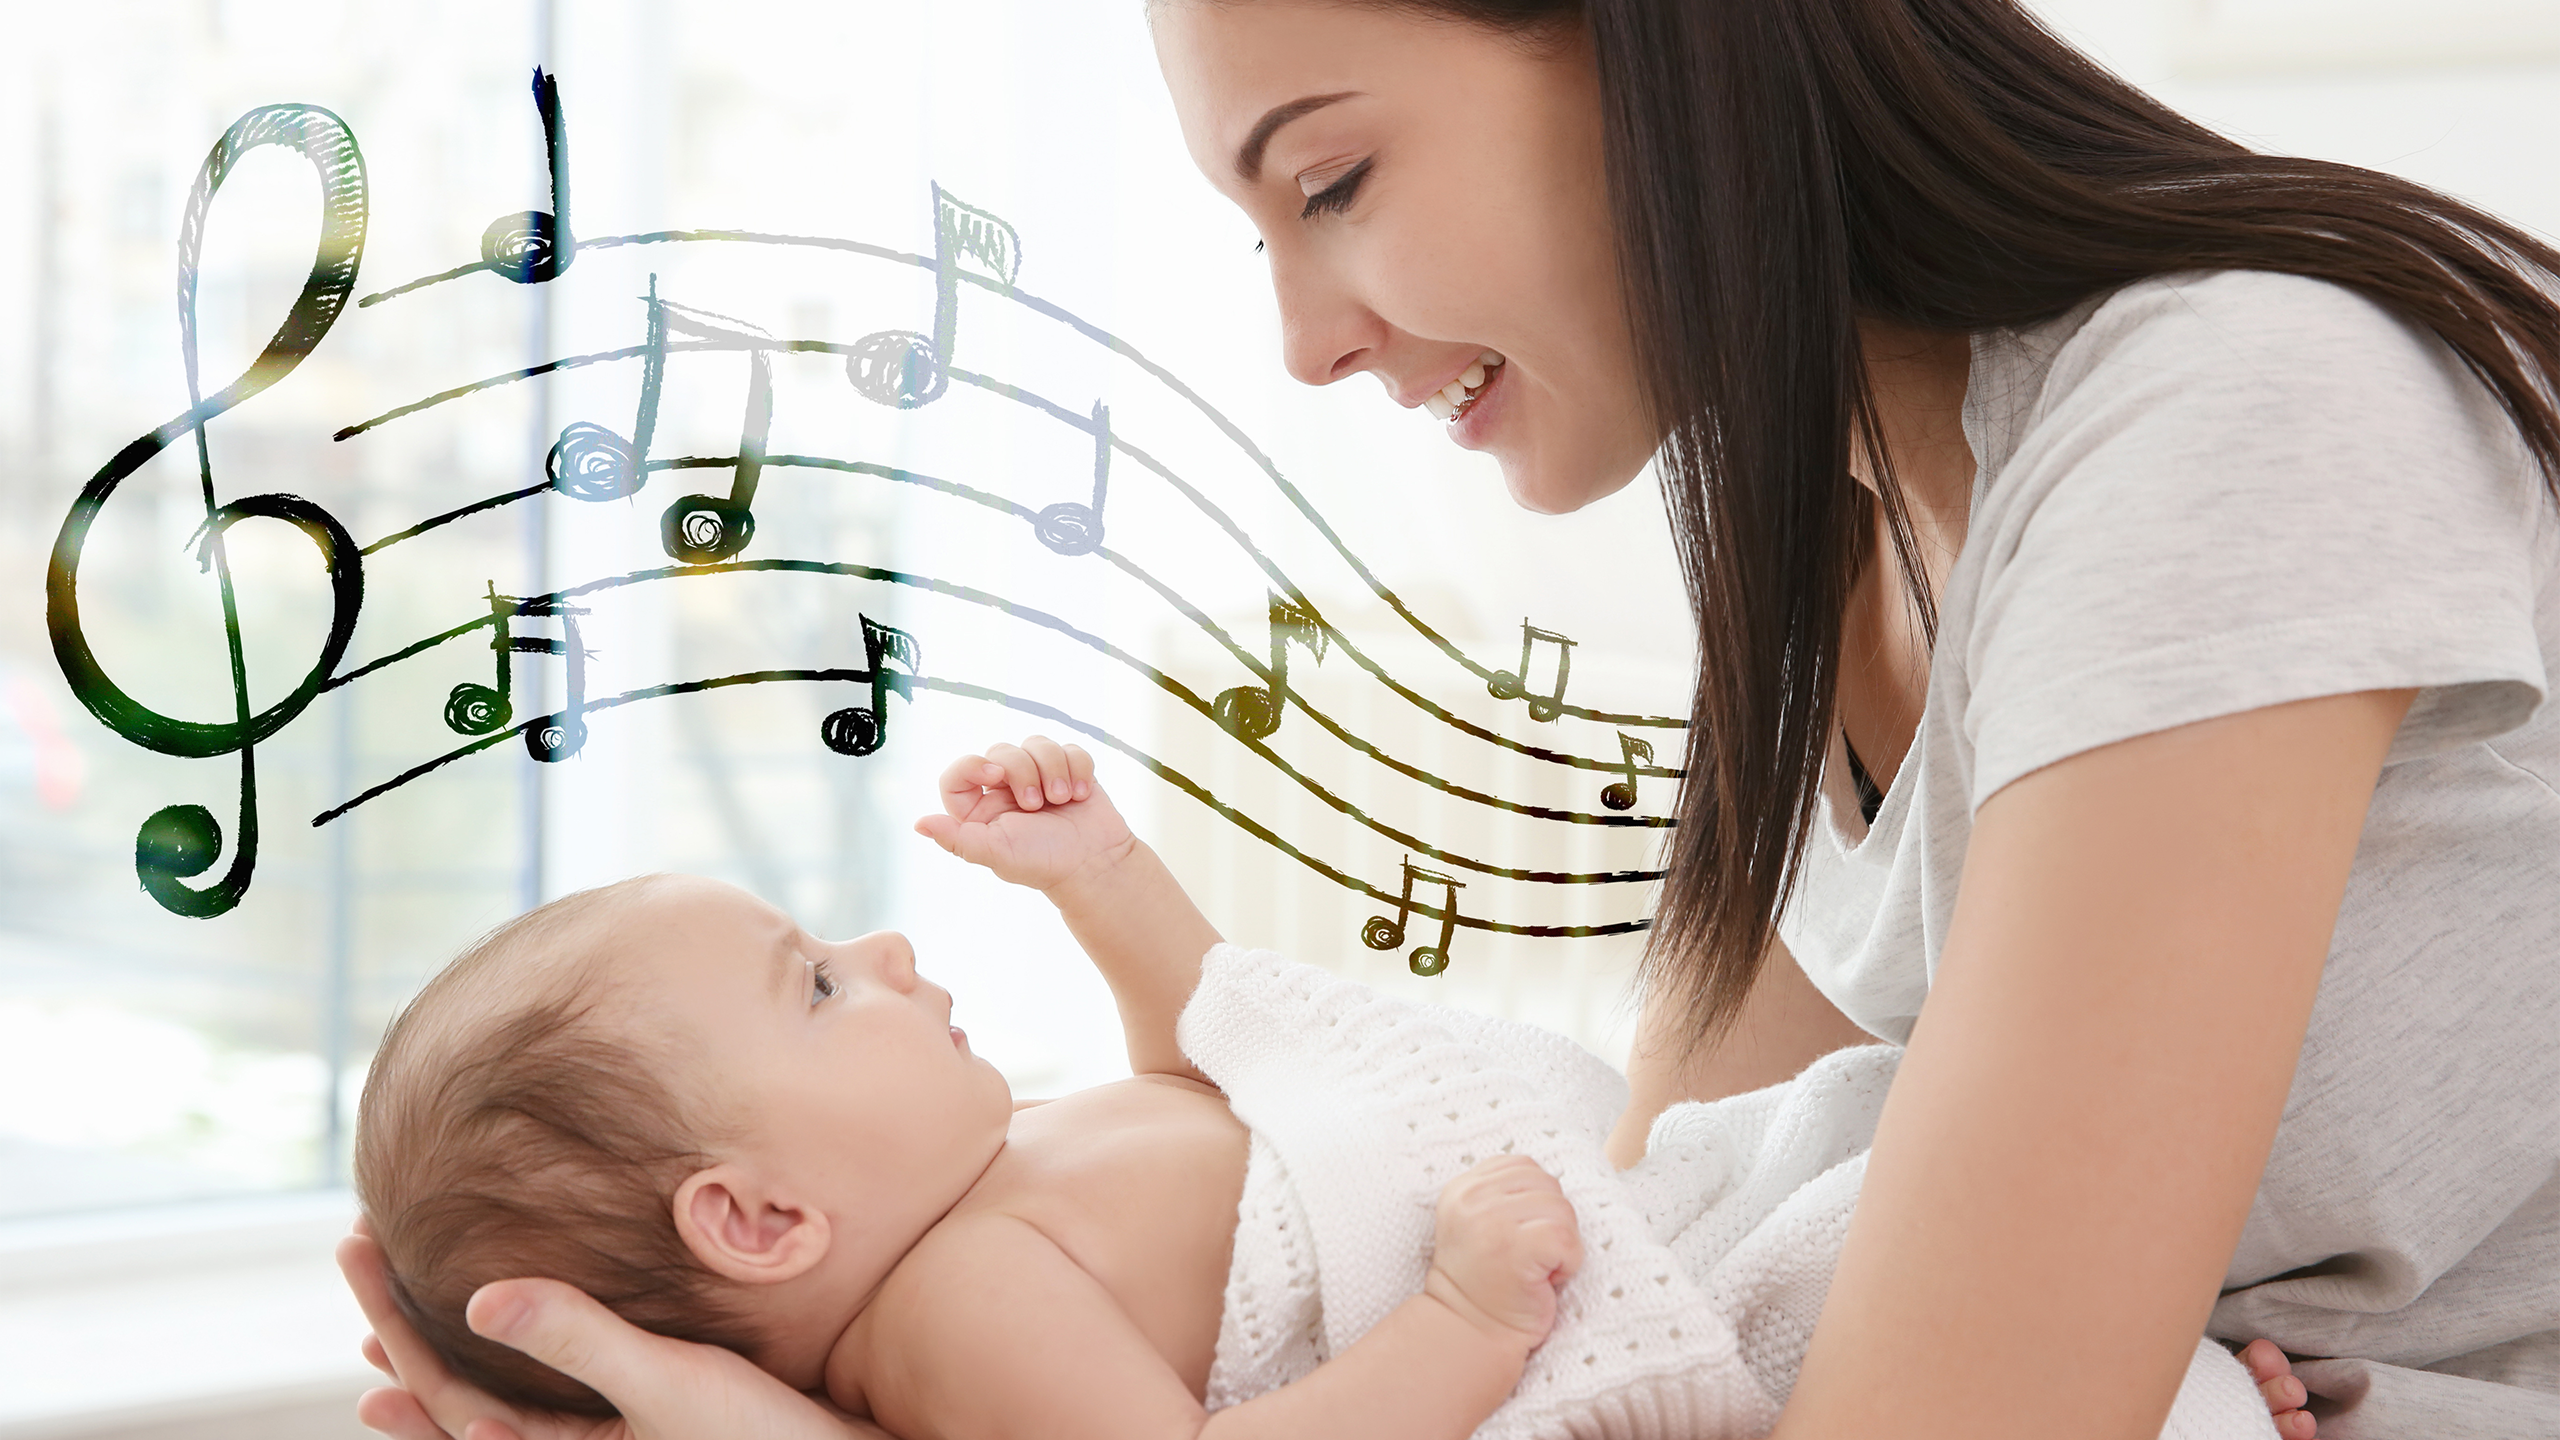 Nurturing Your Baby Through Music